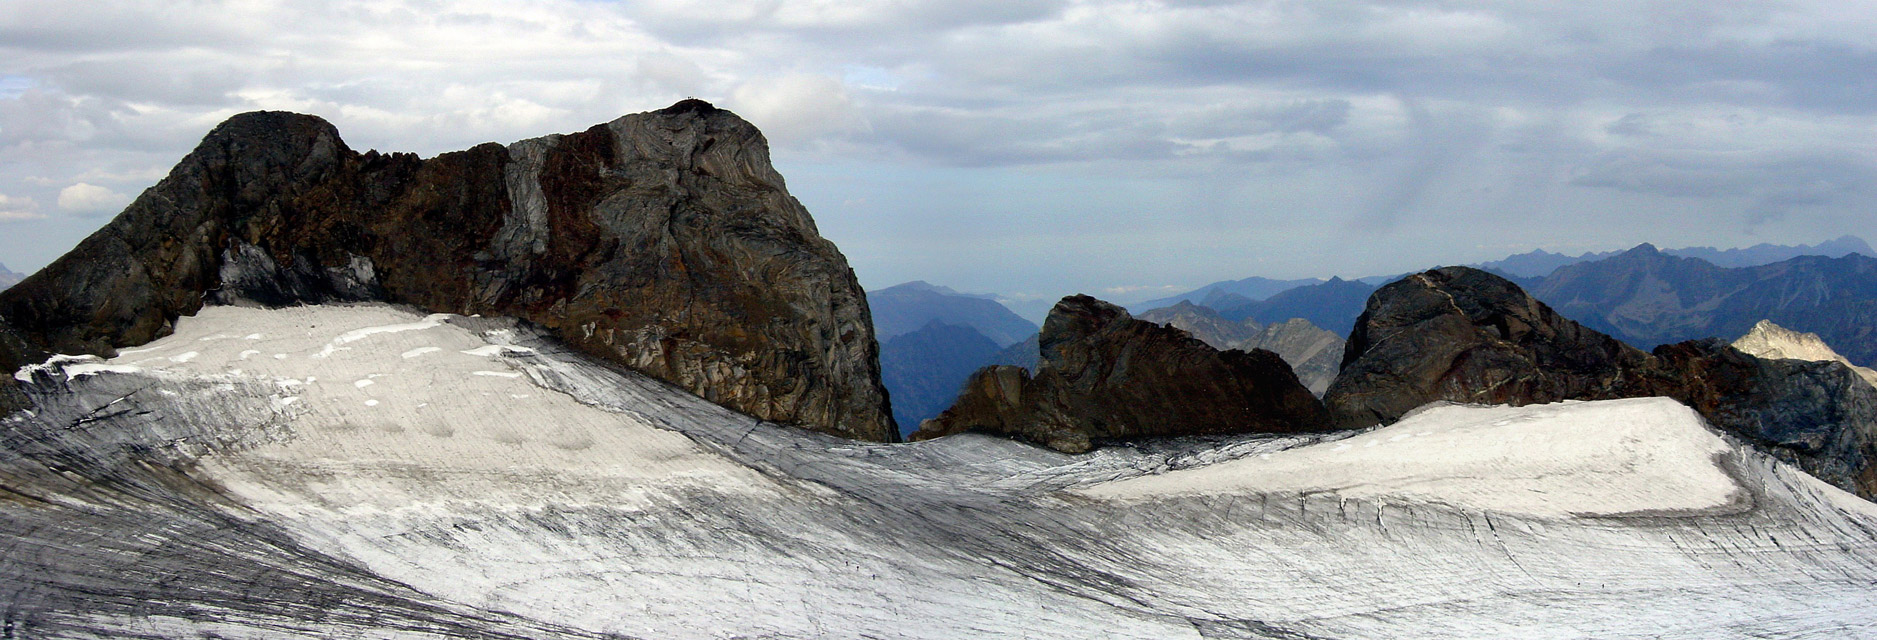 Pic du Clot de la Hount (3289 m) - Grand Vignemale (3298 m) - Pitón Carre (3197 m) y Punta Chausenque (3204 m)